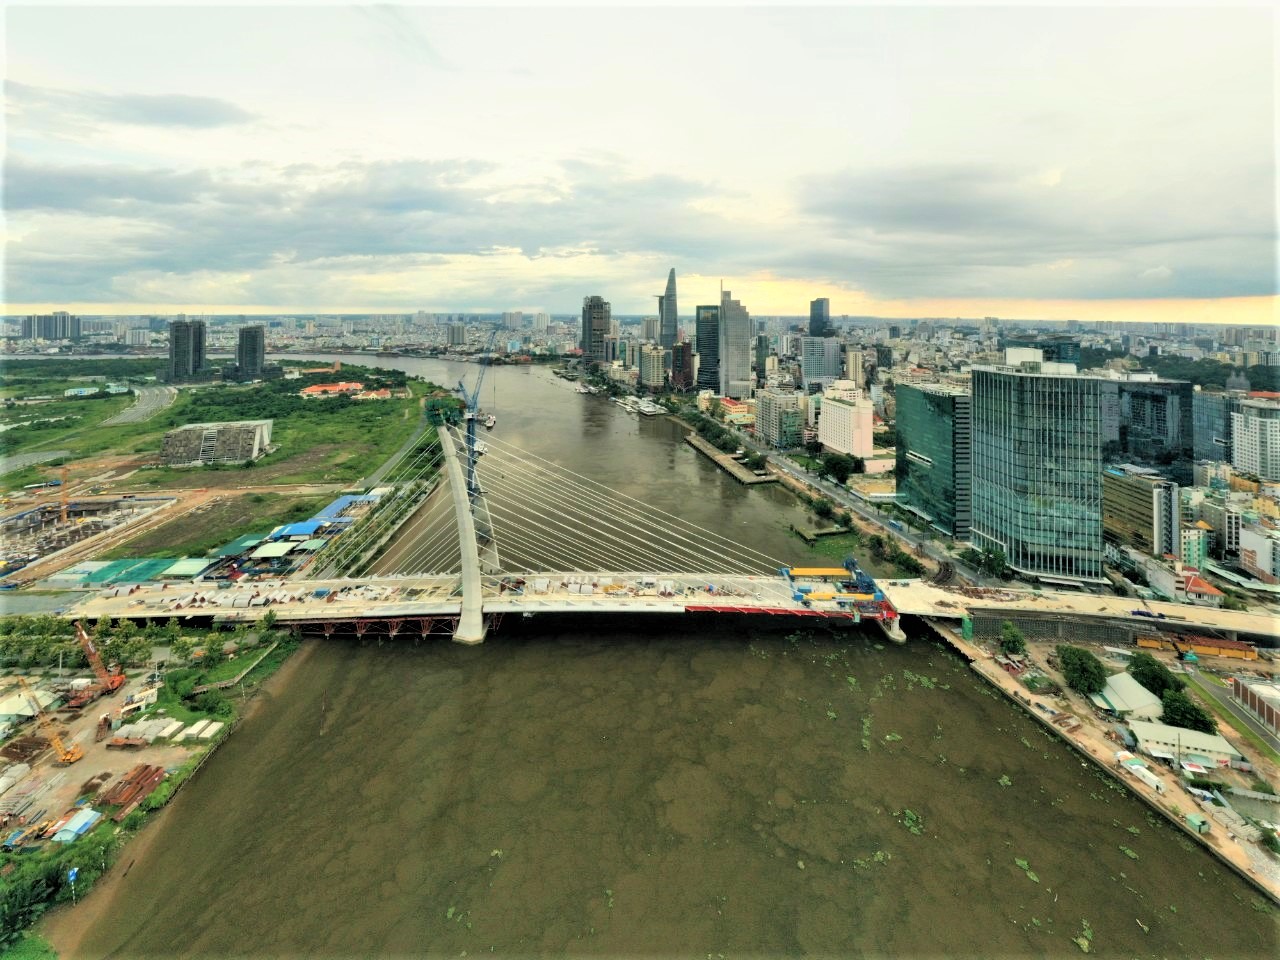 Cầu Thủ Thiêm 2 liền kề dự án cũng đã hợp long vào tháng 9/2021